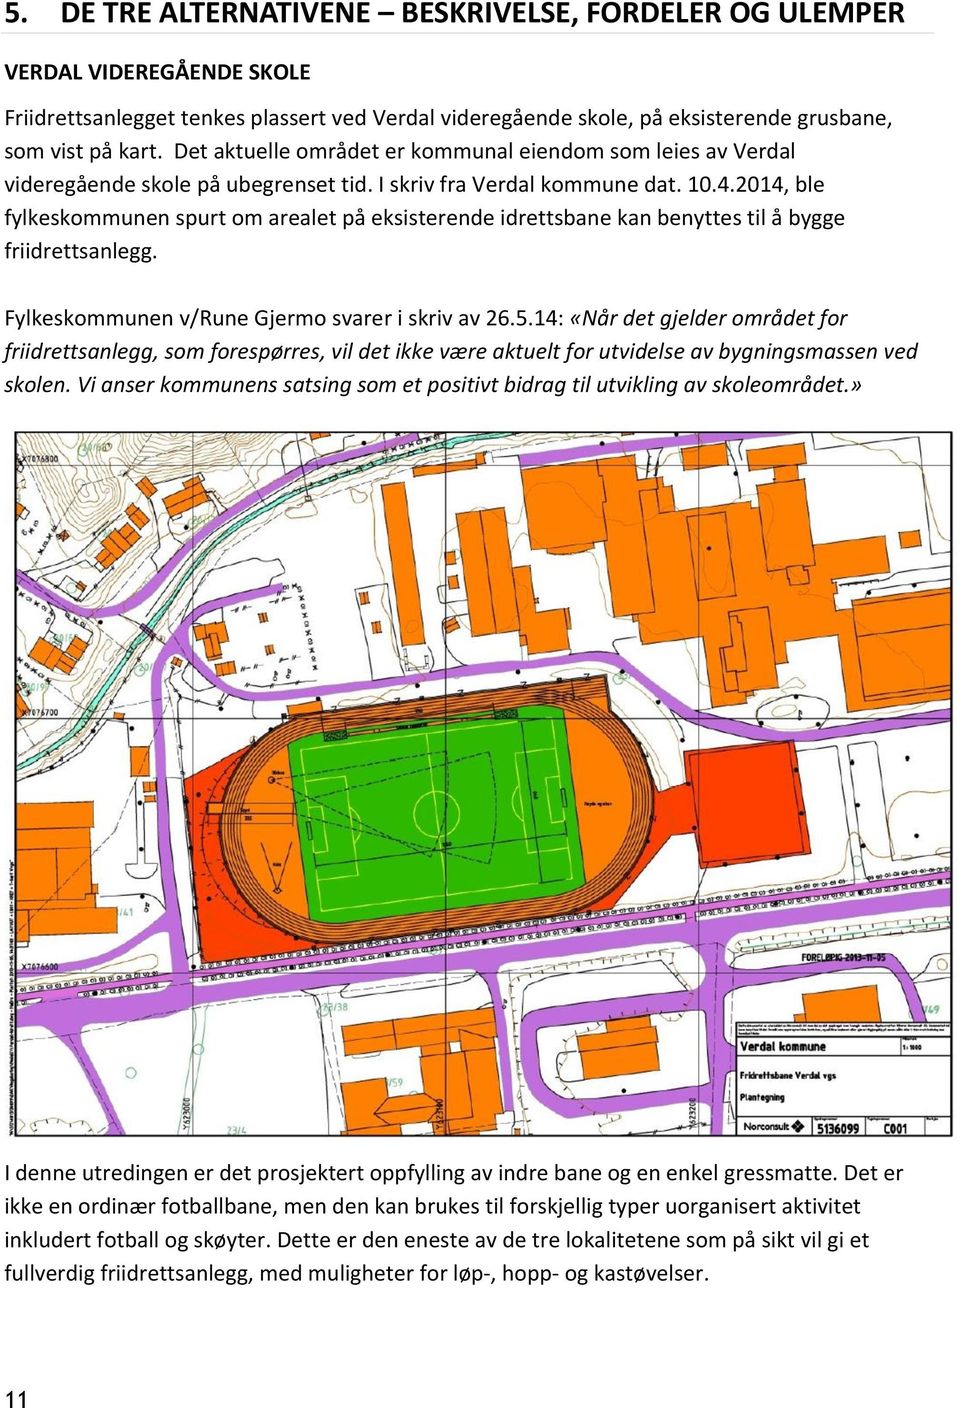 2014, ble fylkeskommunen spurt om arealet på eksisterende idrettsbane kan benyttes til å bygge friidrettsanlegg. Fylkeskommunen v/rune Gjermo svarer i skriv av 26.5.